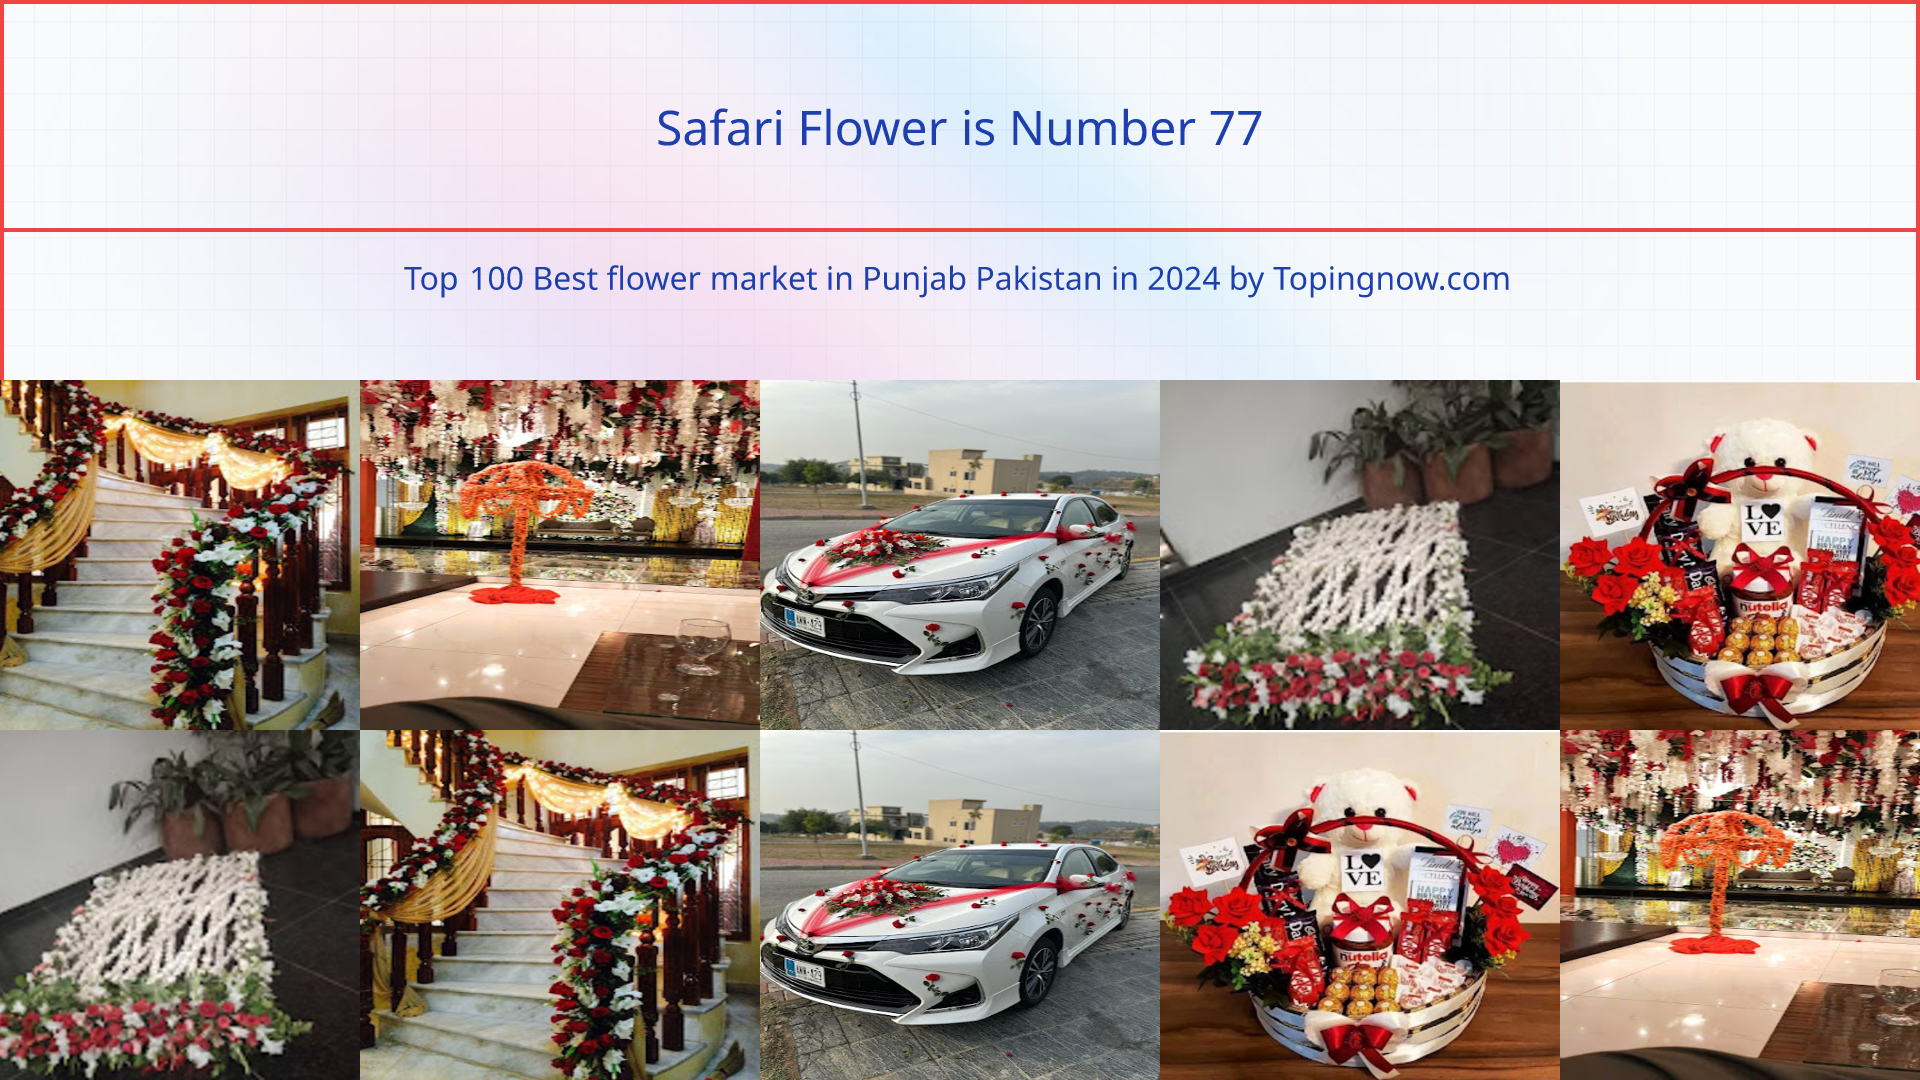 Safari Flower: Top 100 Best flower market in Punjab Pakistan in 2024